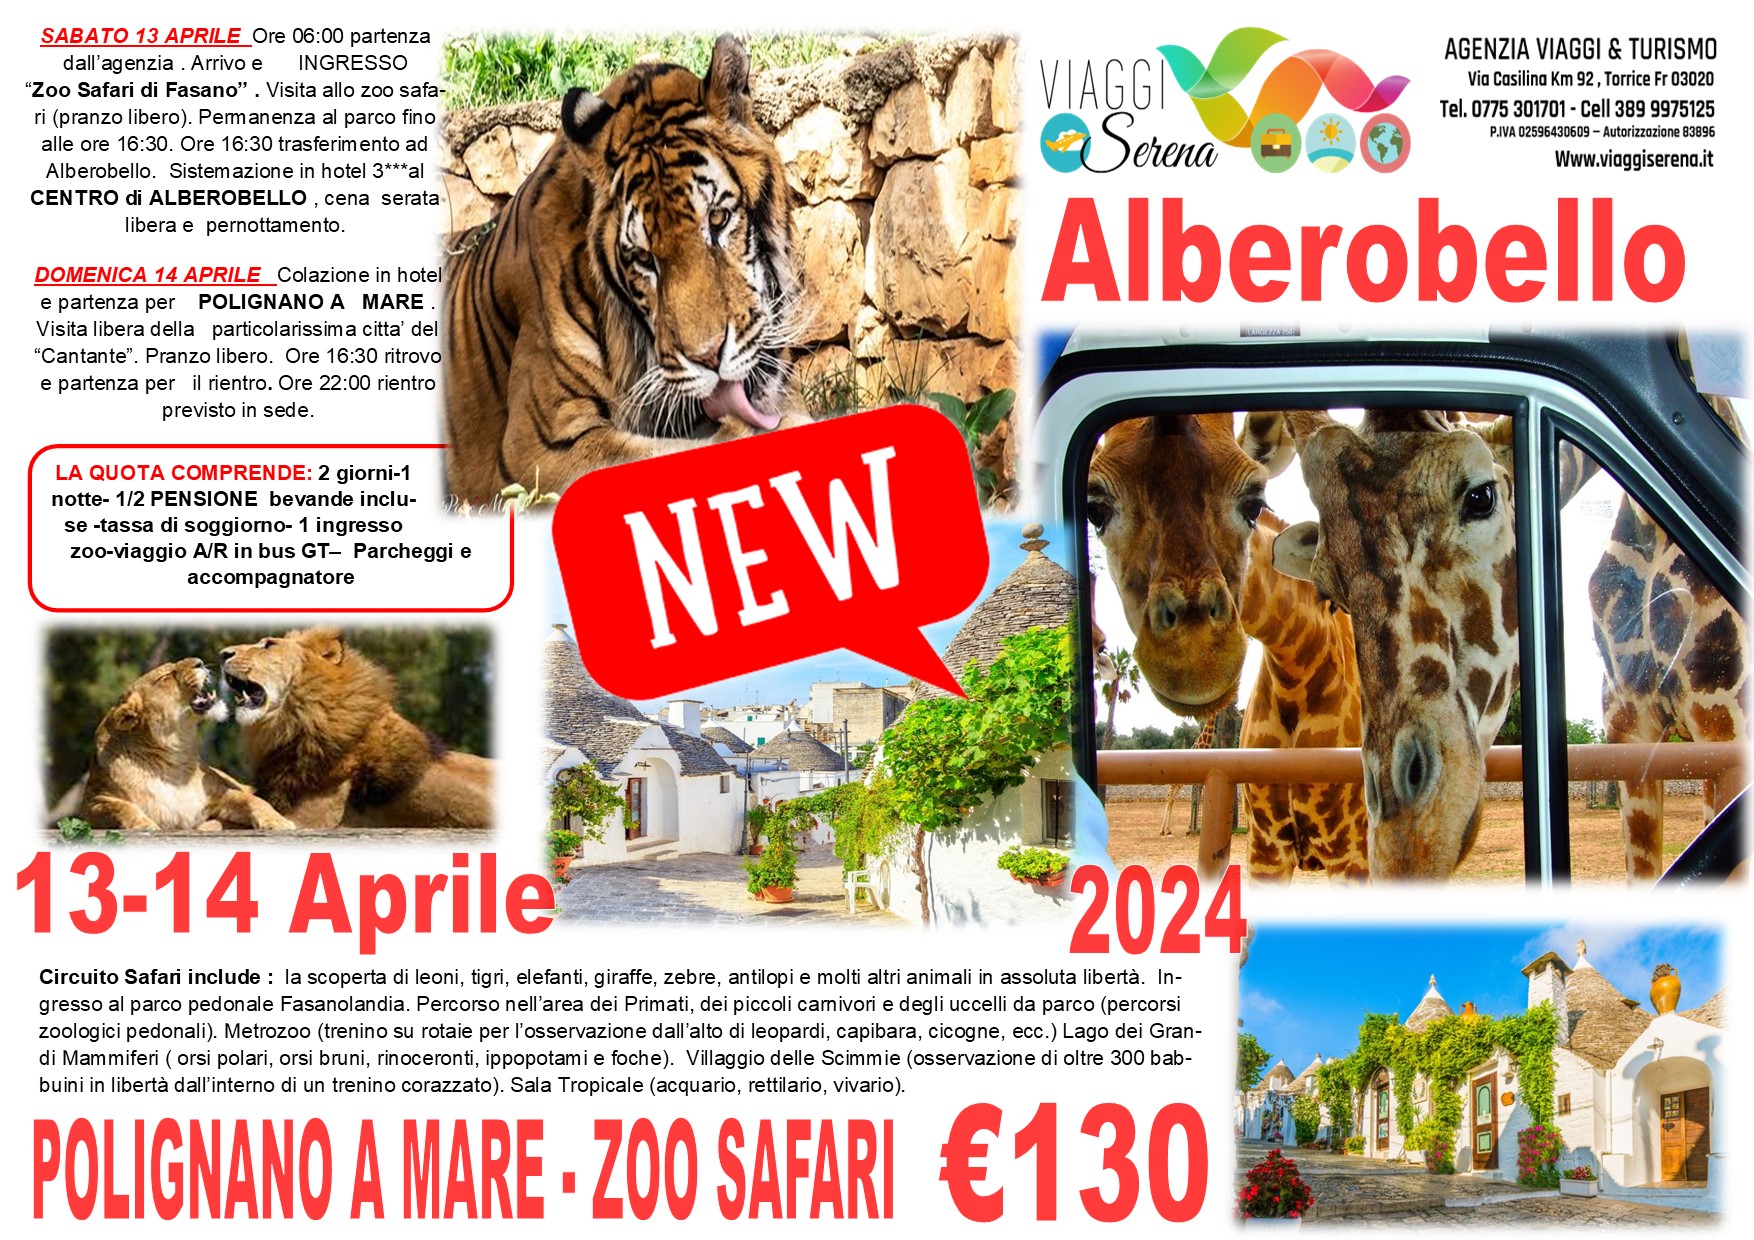 Viaggi di gruppo: Polignano a Mare, Alberobello & Zoo safari 13-14 Aprile € 130